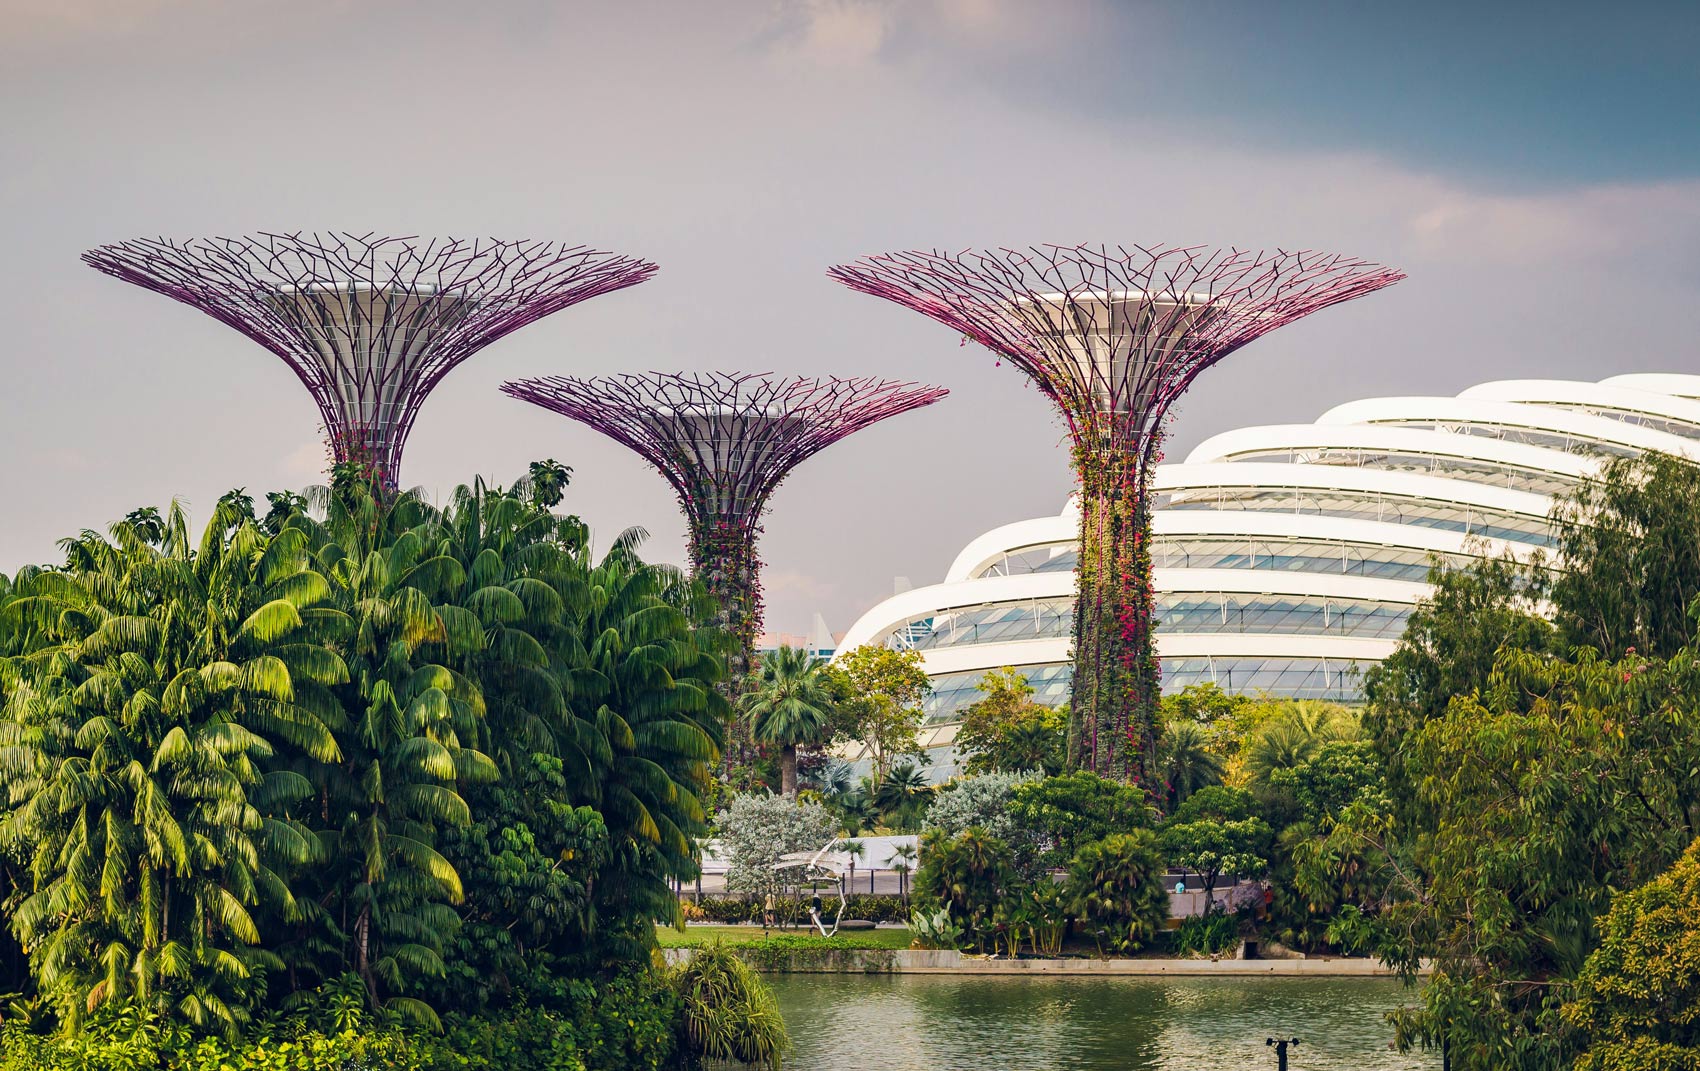 Das Bild zeigt die Gardens by the Bay in Singapur